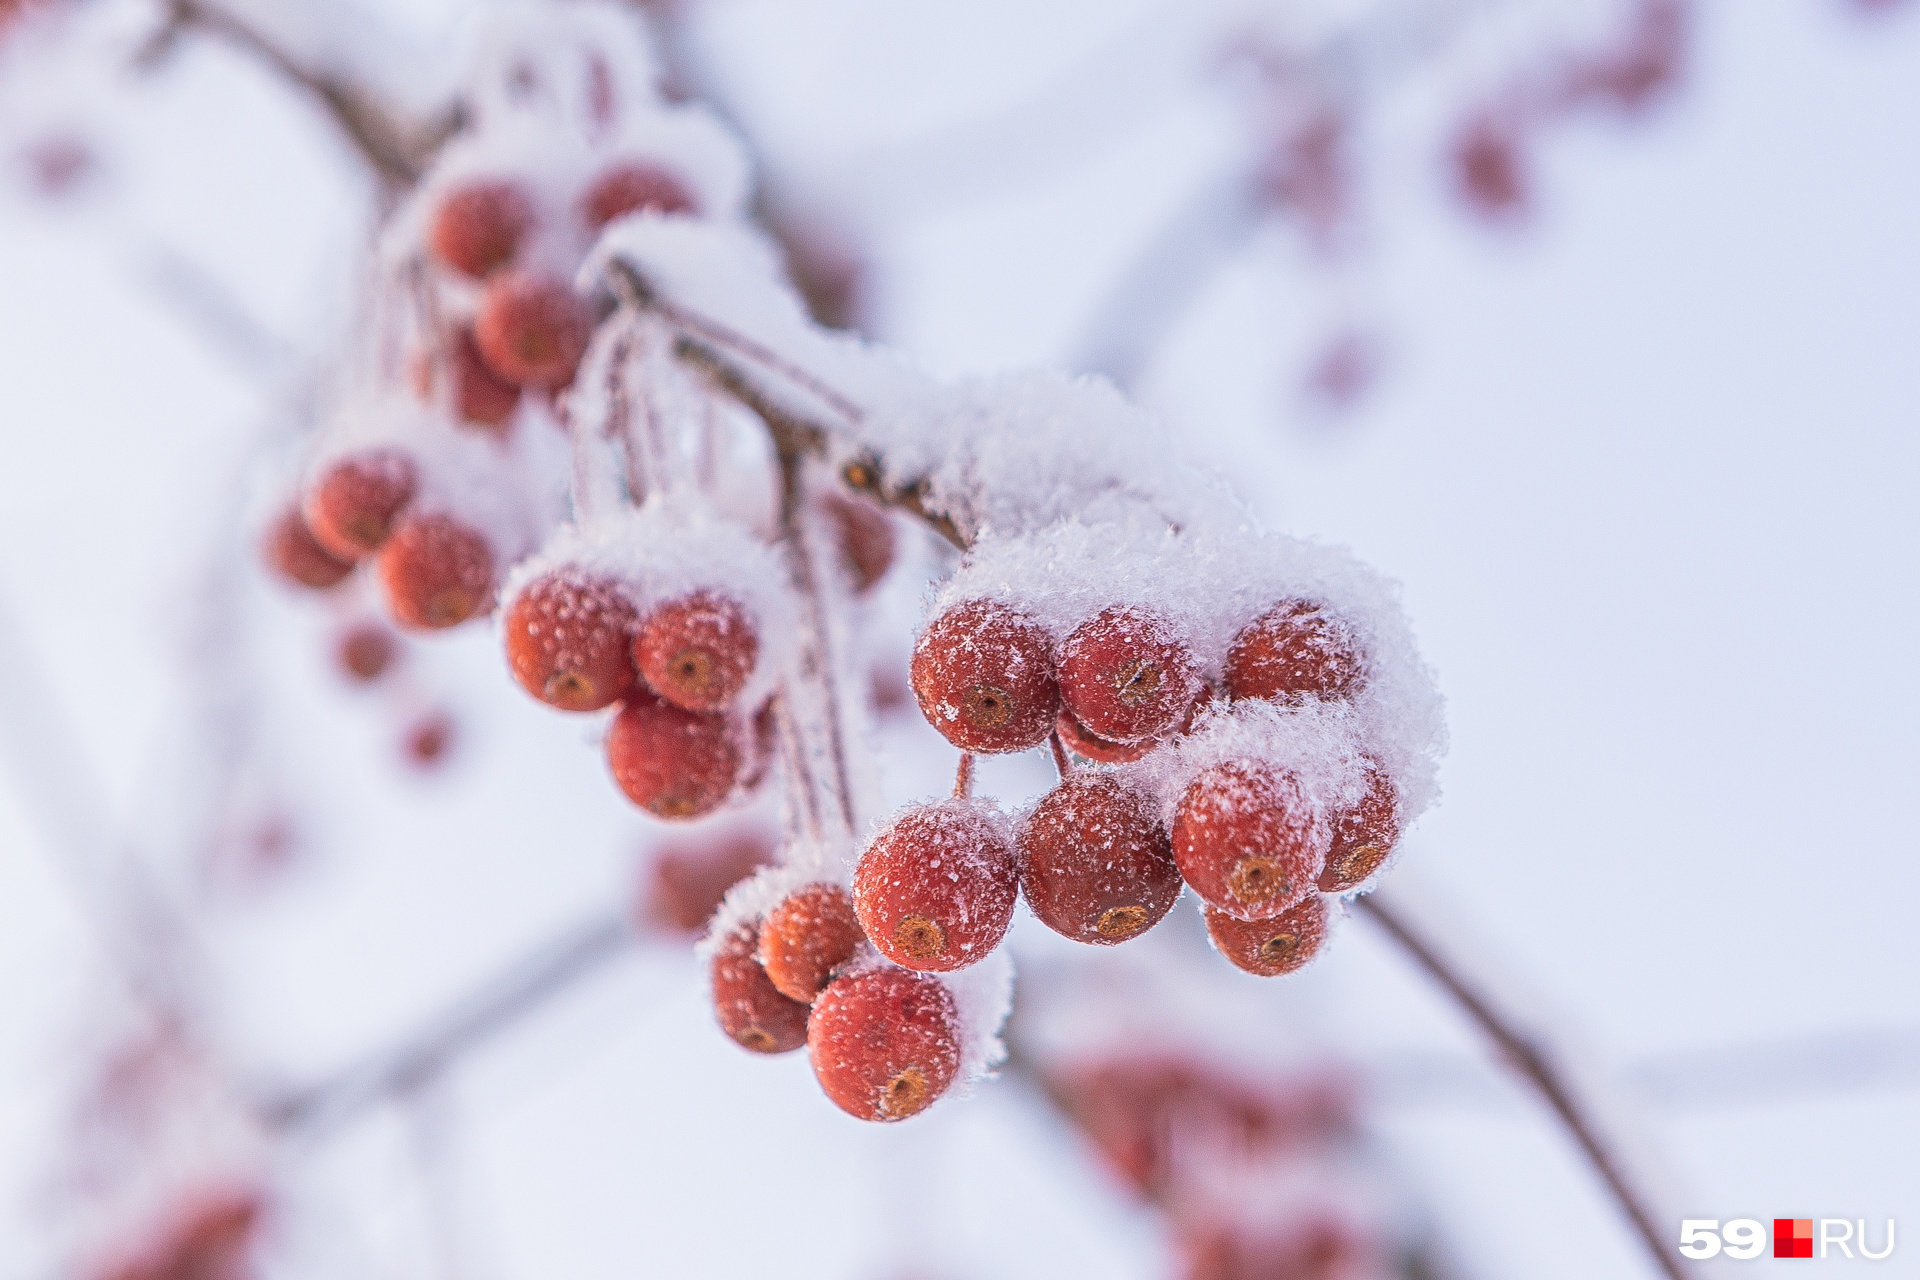 Красные ягоды, пока не замеченные птицами, эффектно контрастируют с холодным цветом